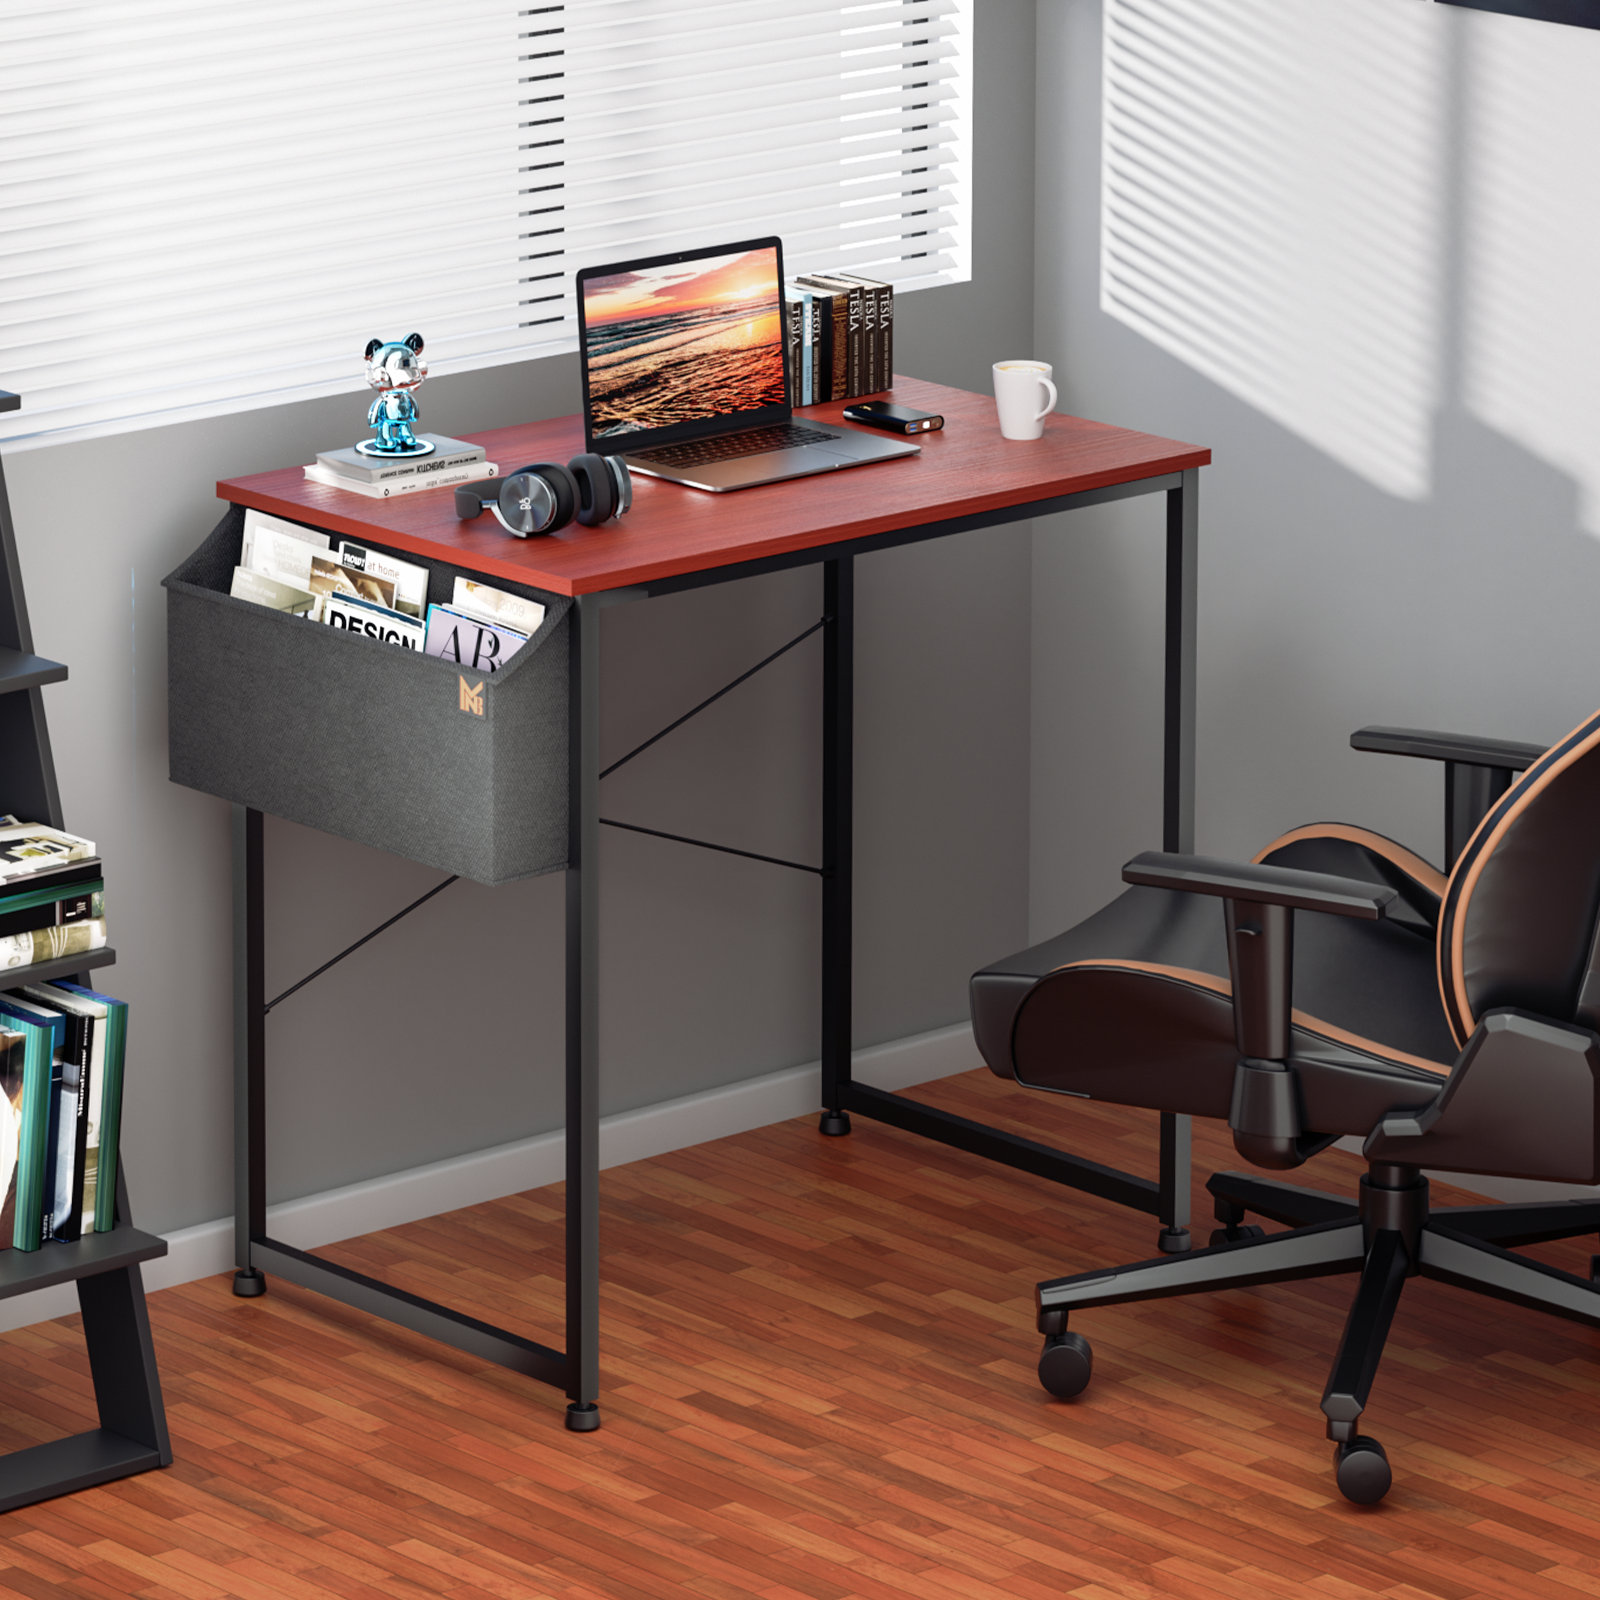 https://assets.wfcdn.com/im/57081501/compr-r85/2572/257296778/office-desk-computer-desk-adjustable-table-feet-with-additional-storage-bag.jpg